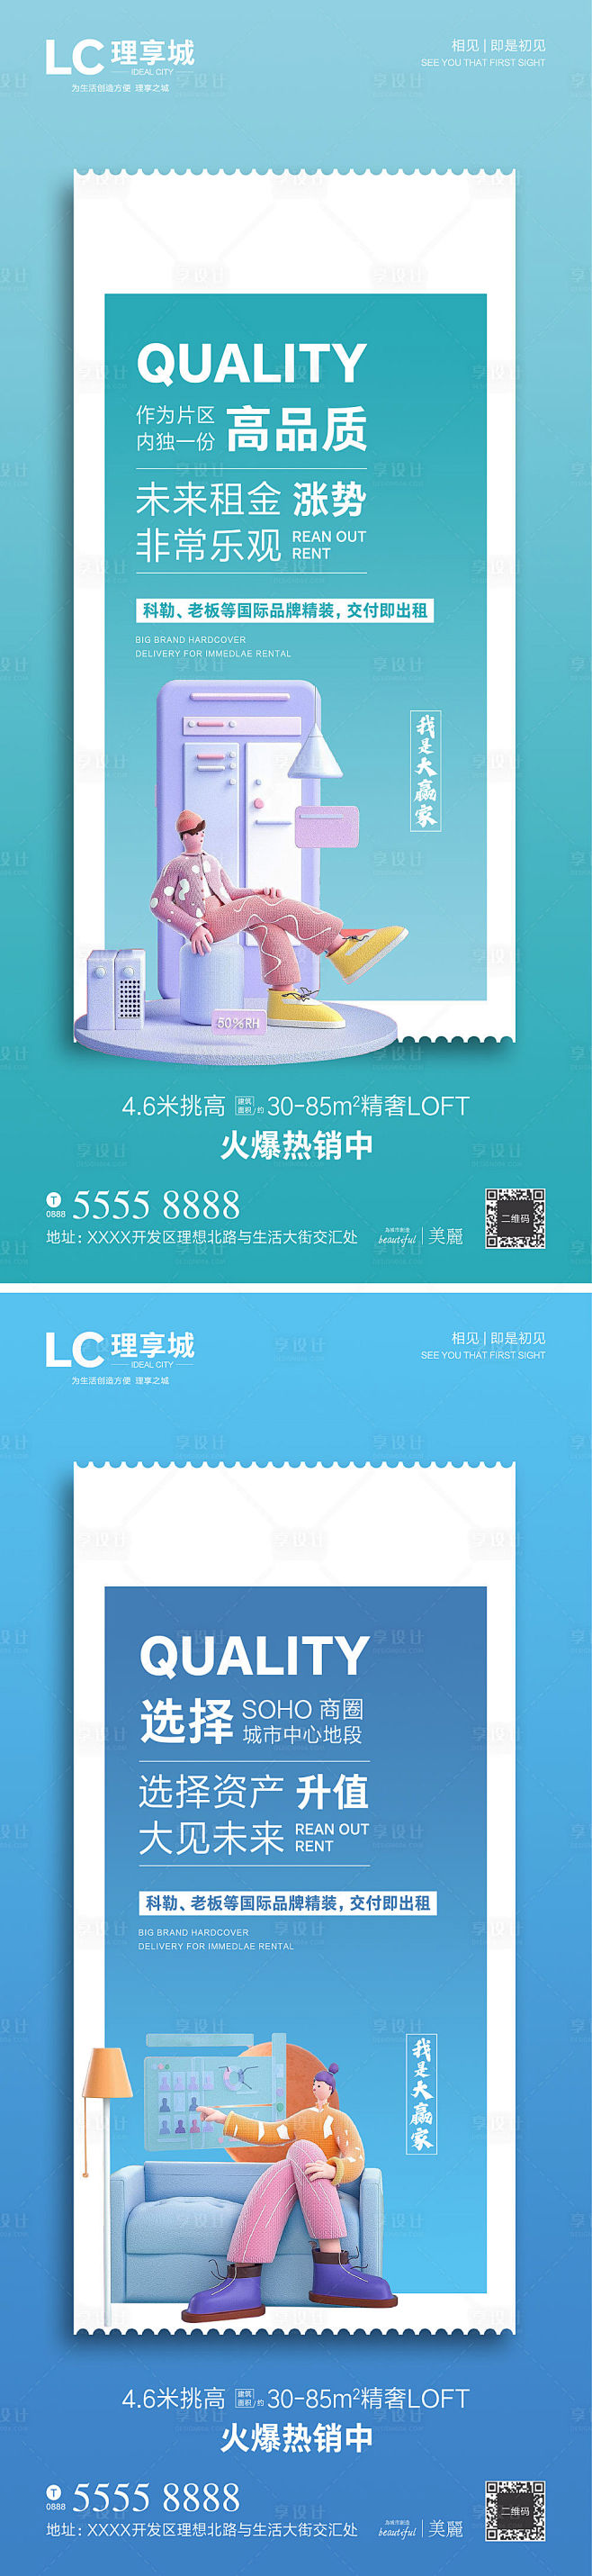 地产LOFT公寓卖点海报系列AI+PSD...